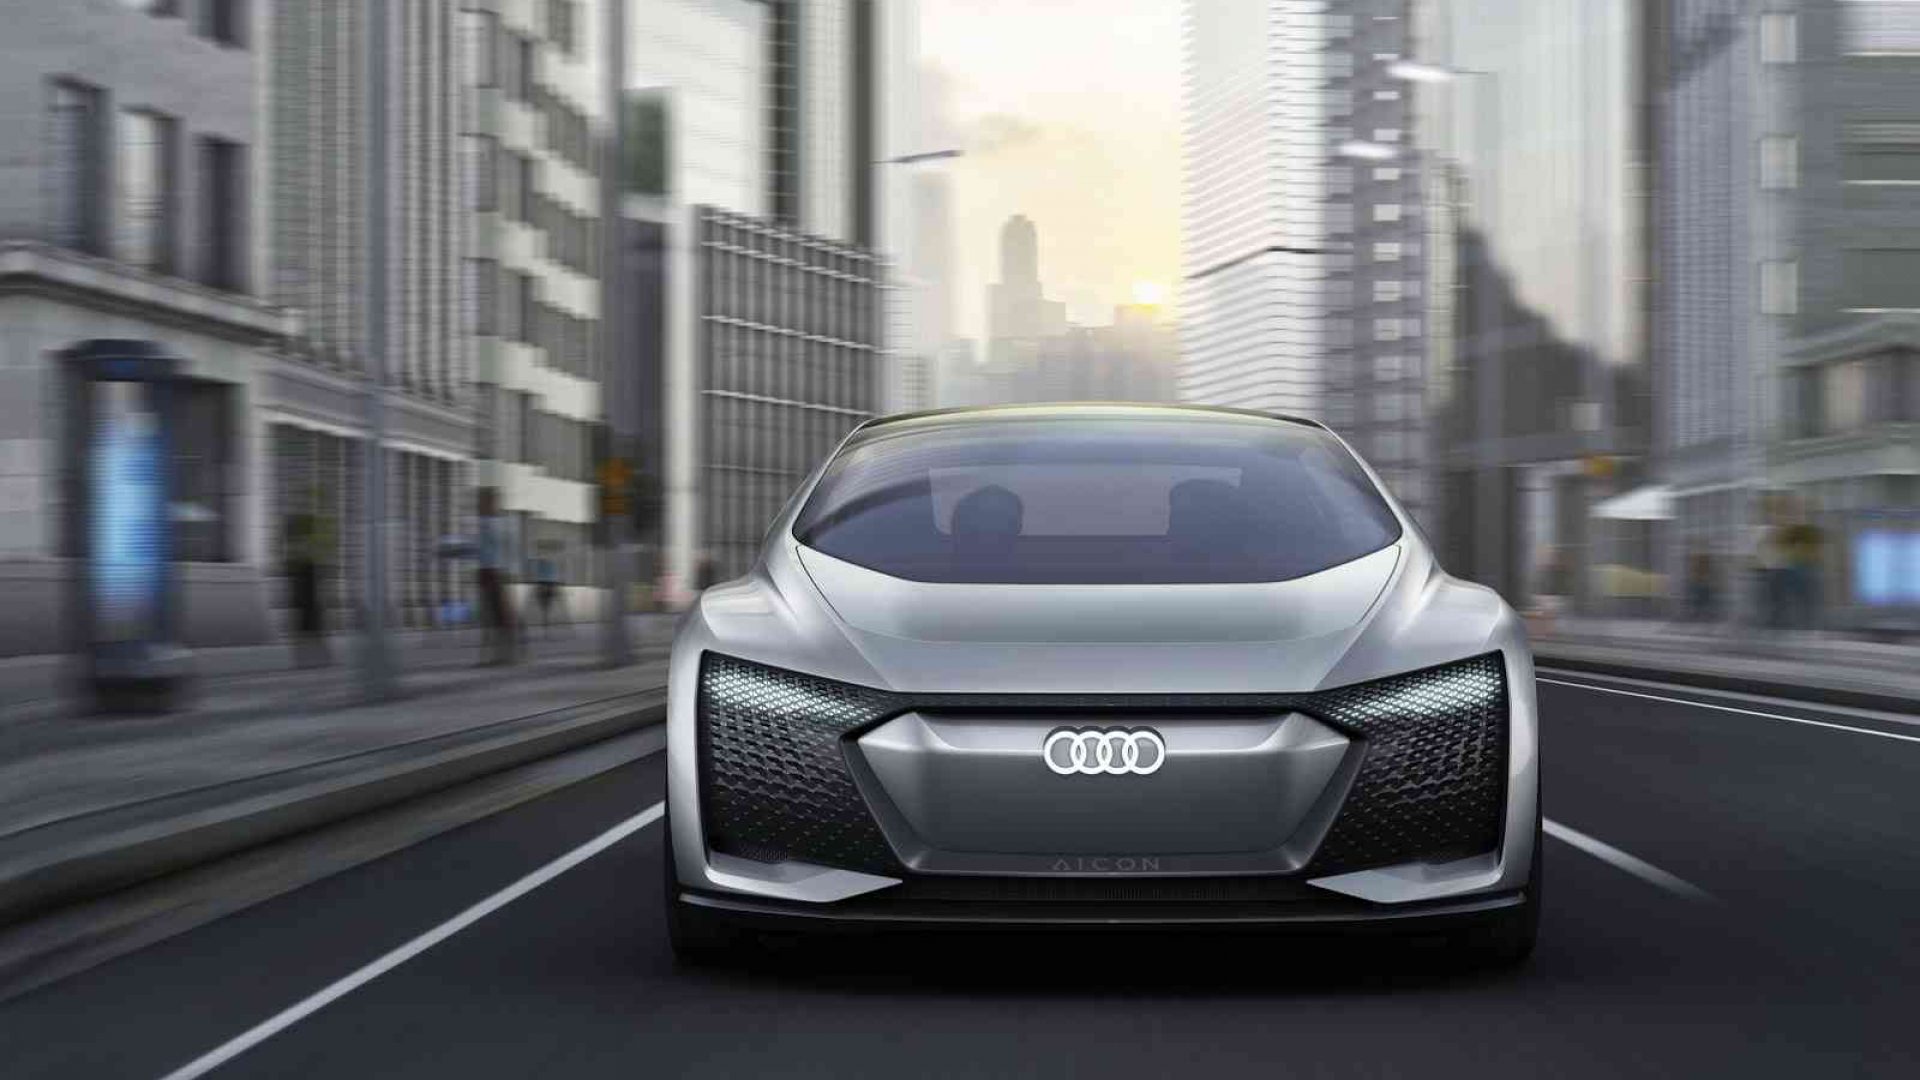 2017-Audi-Aicon-Concept-09